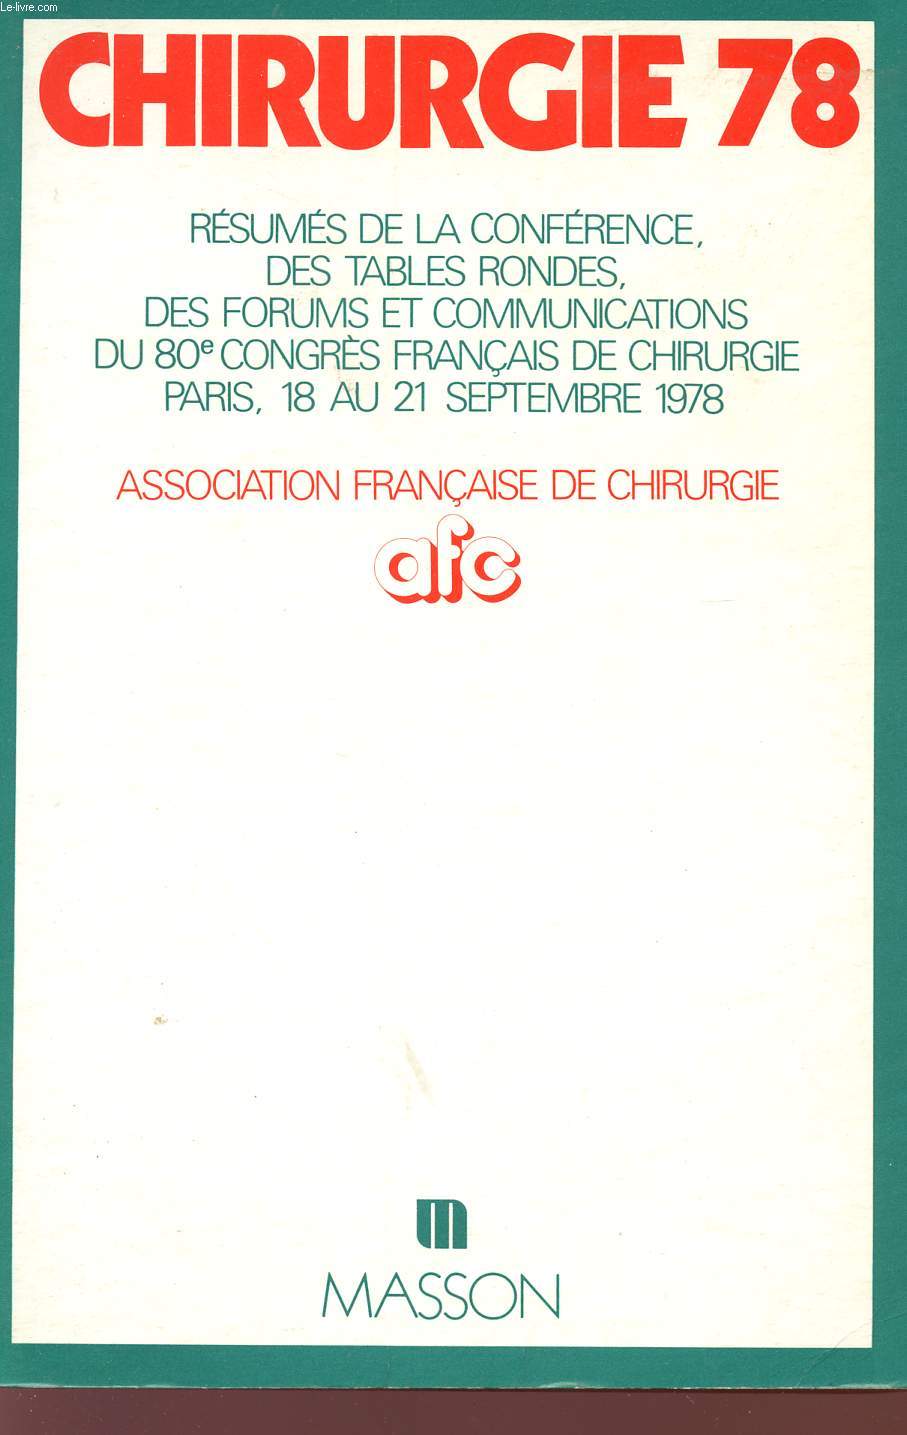 CHIRURGIE 78 - RESUMES DE LA CONFERENCE - DES TABLES RONDES - DES FORUMS ET COMMUNICATIONS DU 80 CONGRES FRANCAIS DE CHIRURGIE - PARIS - 18 AU 21 SEPTEMBRE 1978 - ASSOCIATION FRANCAISE DE CHIRURGIE.